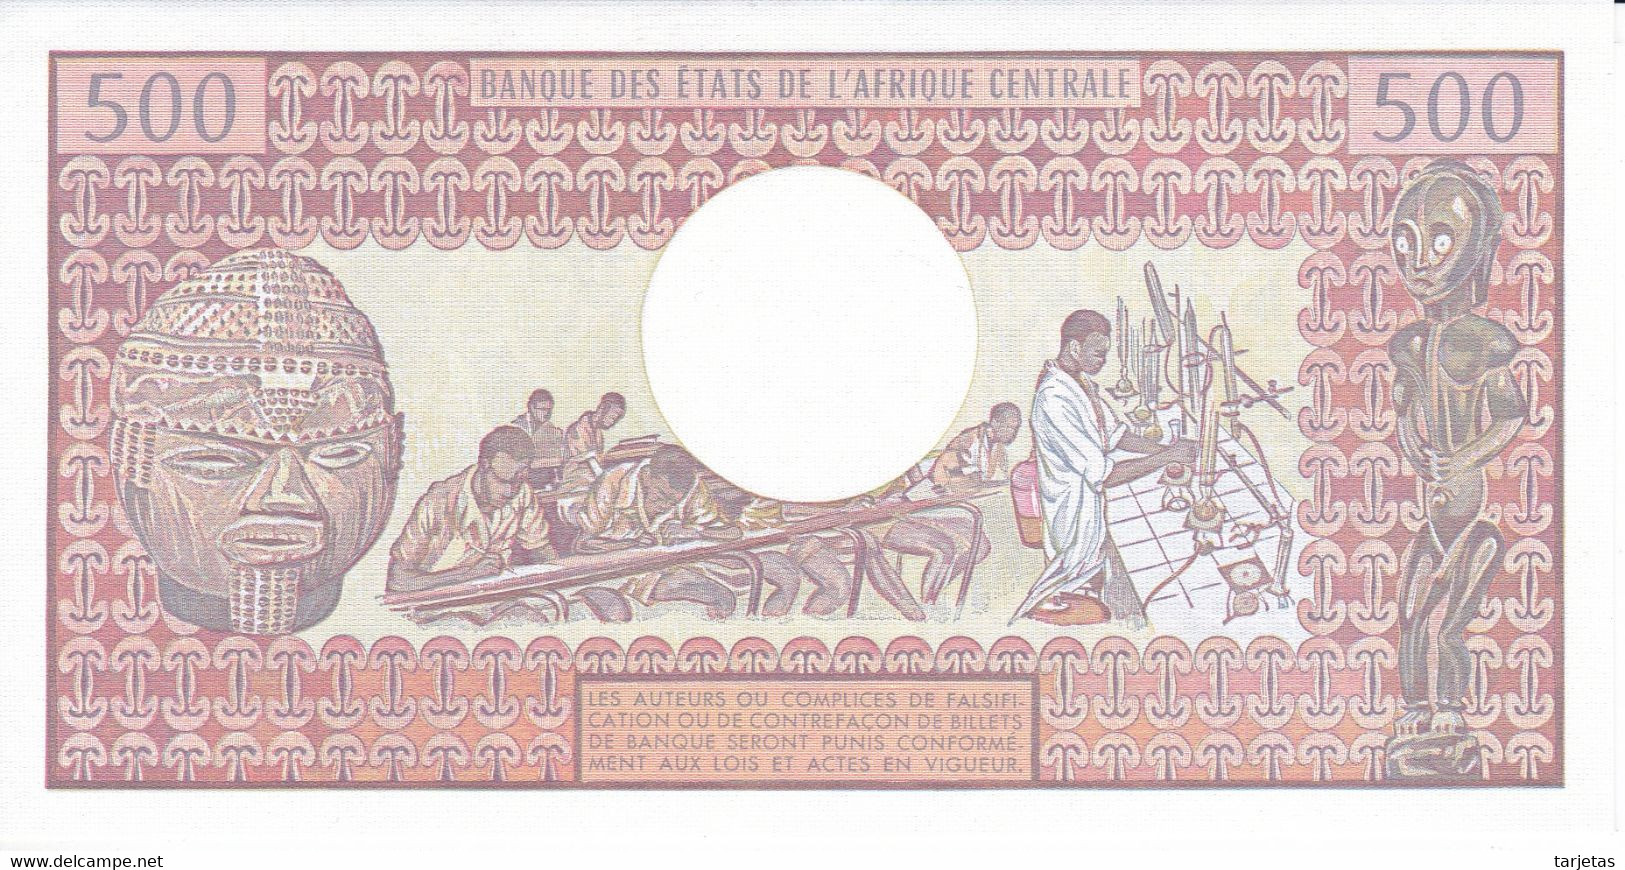 BILLETE DE TCHAD DE 500 FRANCS DEL AÑO 1984 SIN CIRCULAR-UNCIRCULATED  (BANKNOTE) - Tschad